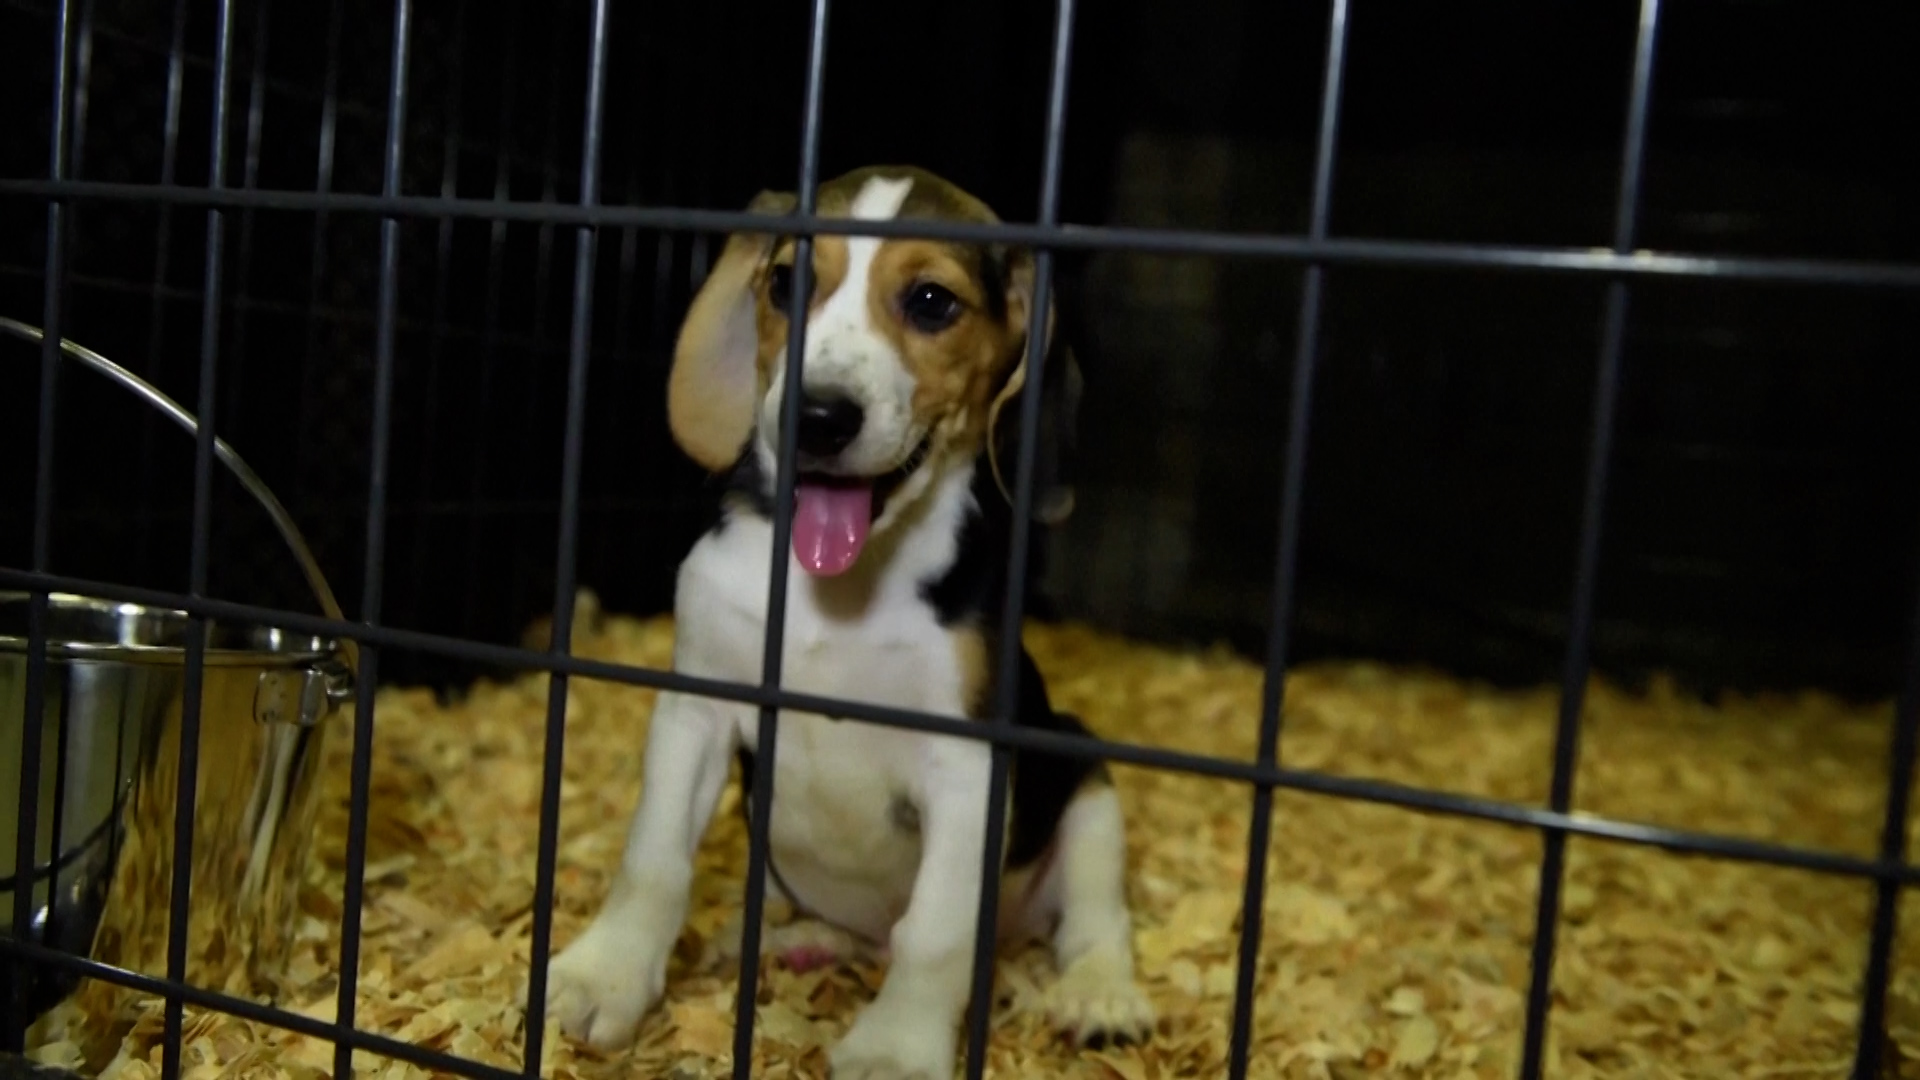 Los registros encontraron que desde el 1 de enero de 2021 hasta el 22 de julio de 2021, las muertes de más de 300 cachorros de beagle en las instalaciones se atribuyeron a “causas desconocidas”, según la demanda (Reuters)